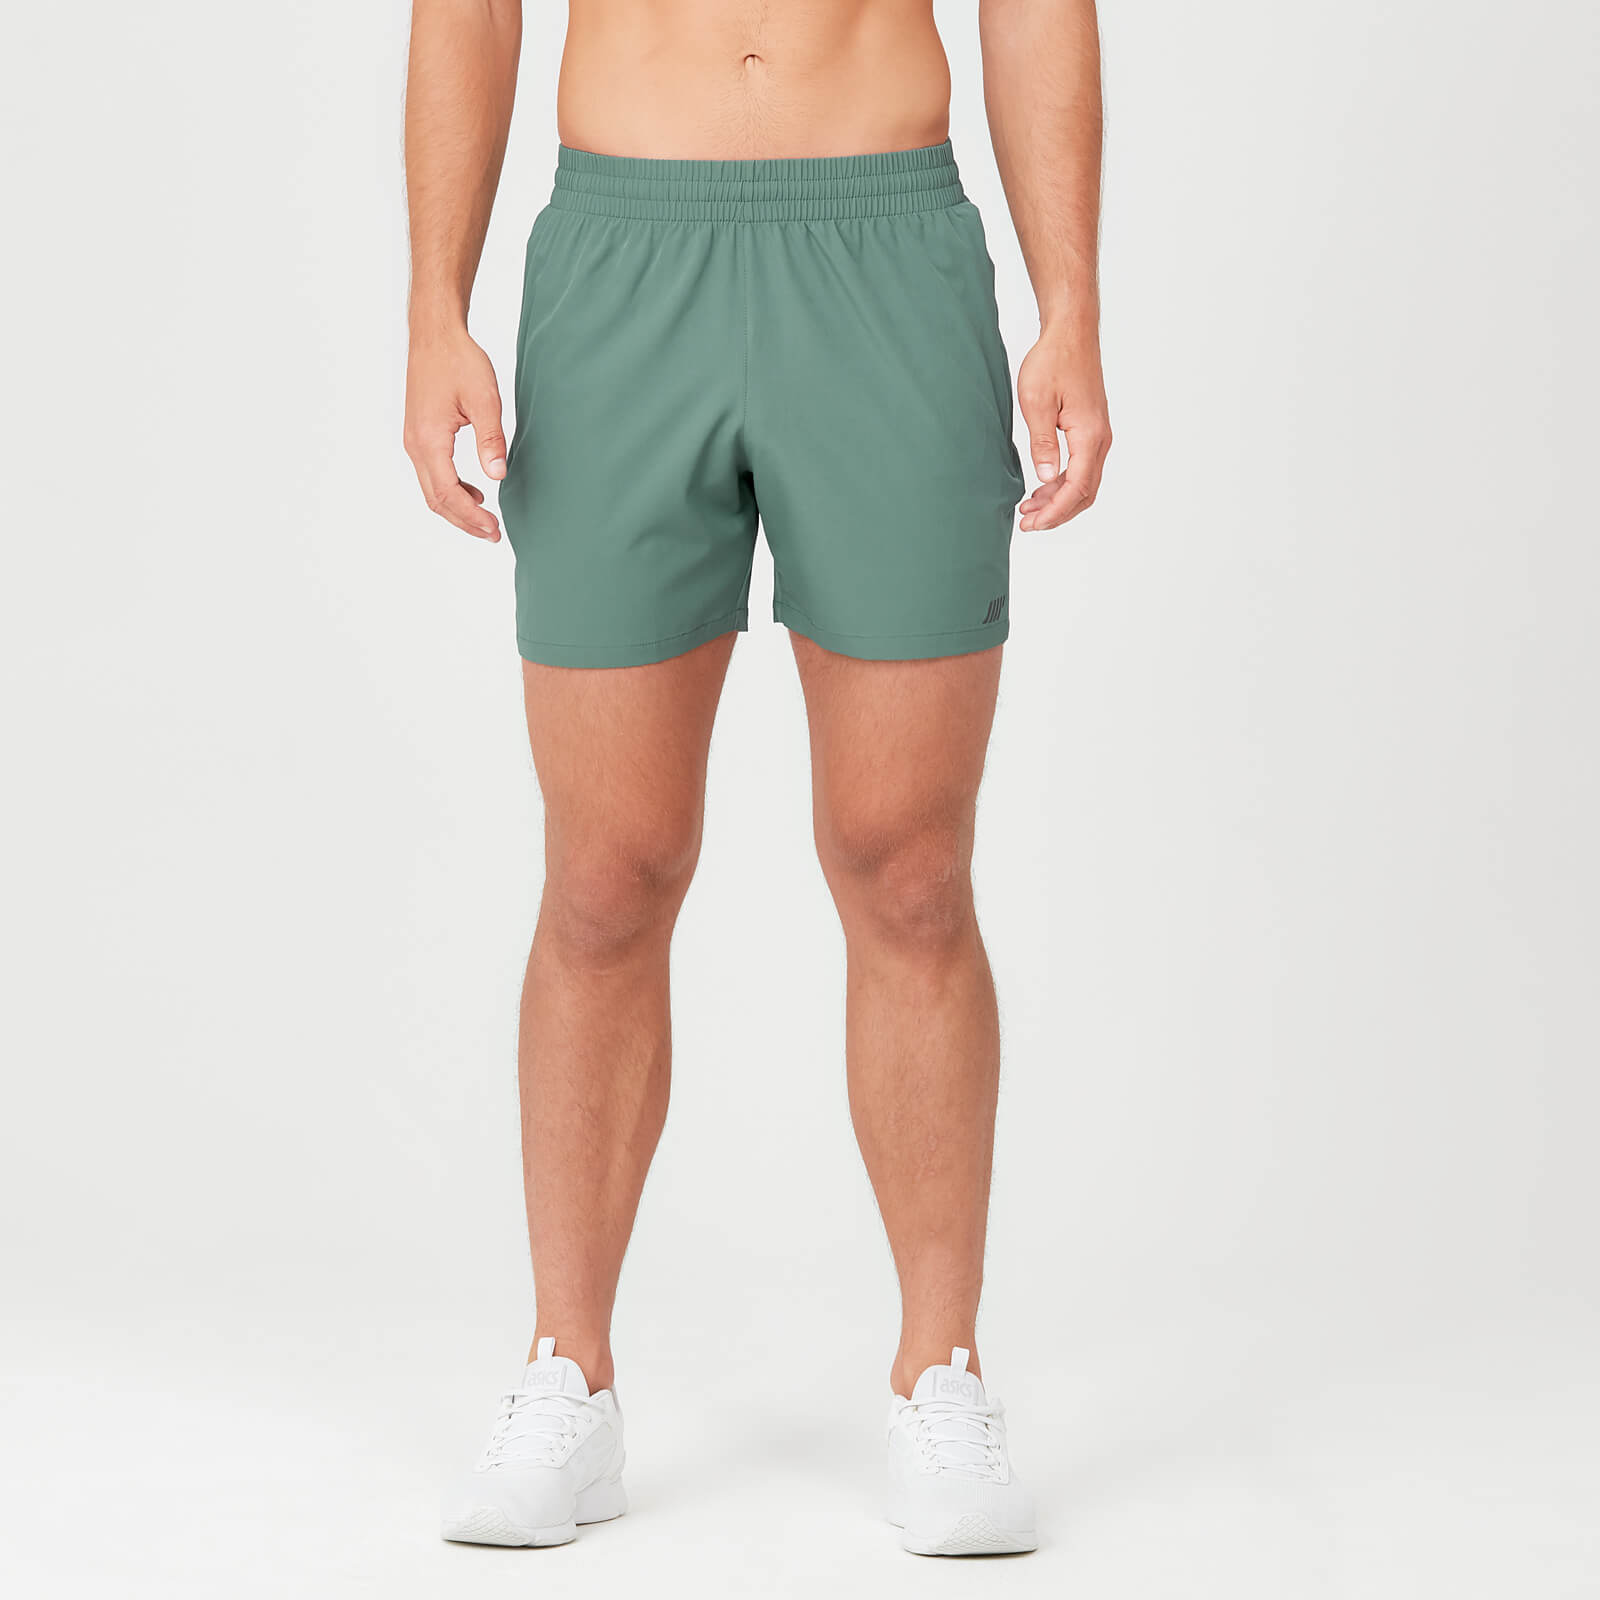 Sprint kratke hlače - Zelene - XXL